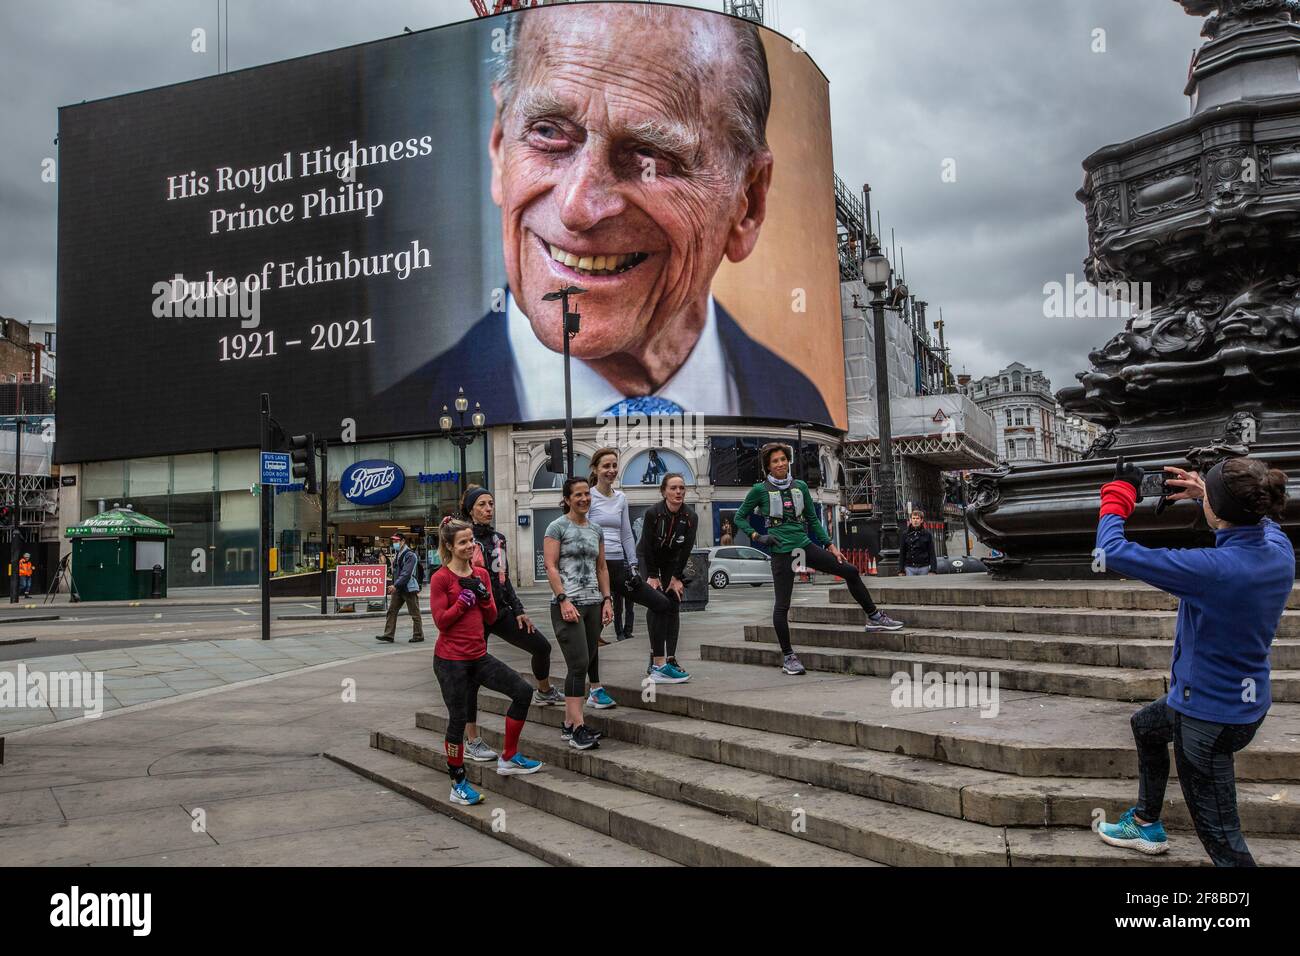 La cartelera publicitaria mundialmente famosa de Piccadilly Circus en el centro de Londres mostró un homenaje al príncipe Felipe después de su muerte el 9th 2021 de abril a los 99 años. Foto de stock